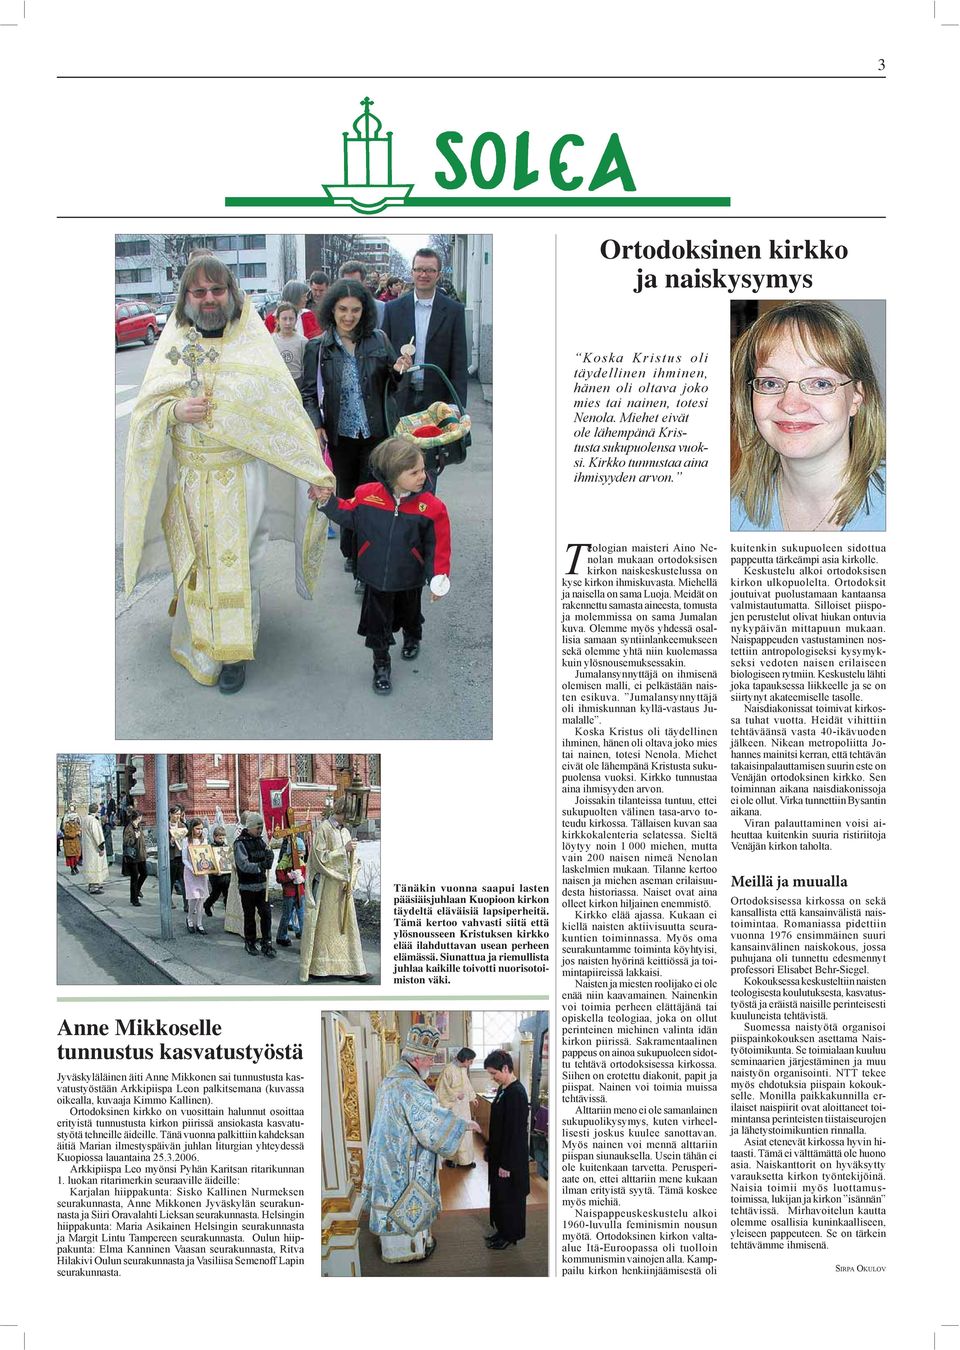 Anne Mikkoselle tunnustus kasvatustyöstä Jyväskyläläinen äiti Anne Mikkonen sai tunnustusta kasvatustyöstään Arkkipiispa Leon palkitsemana (kuvassa oikealla, kuvaaja Kimmo Kallinen).